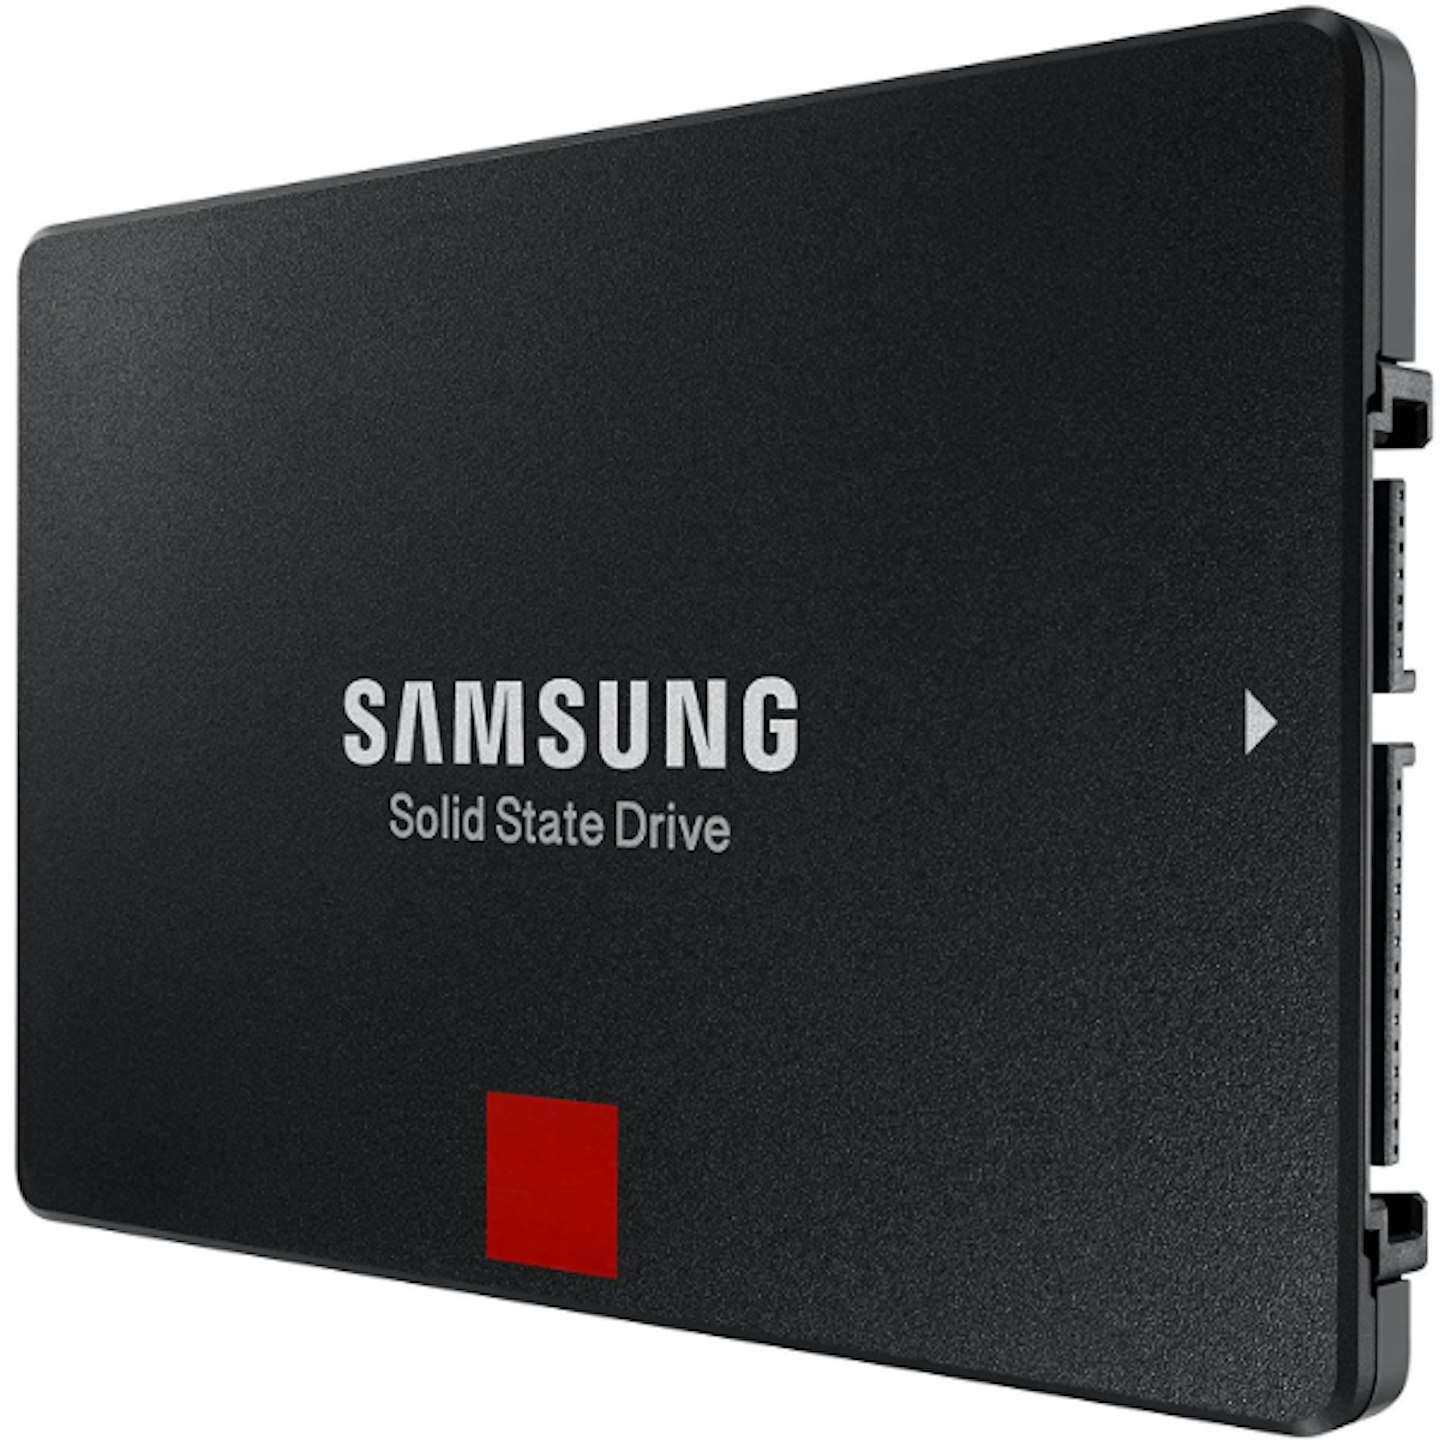 Samsung 860 EVO PRO 2.5-inch SSD, 256GB - 4TB